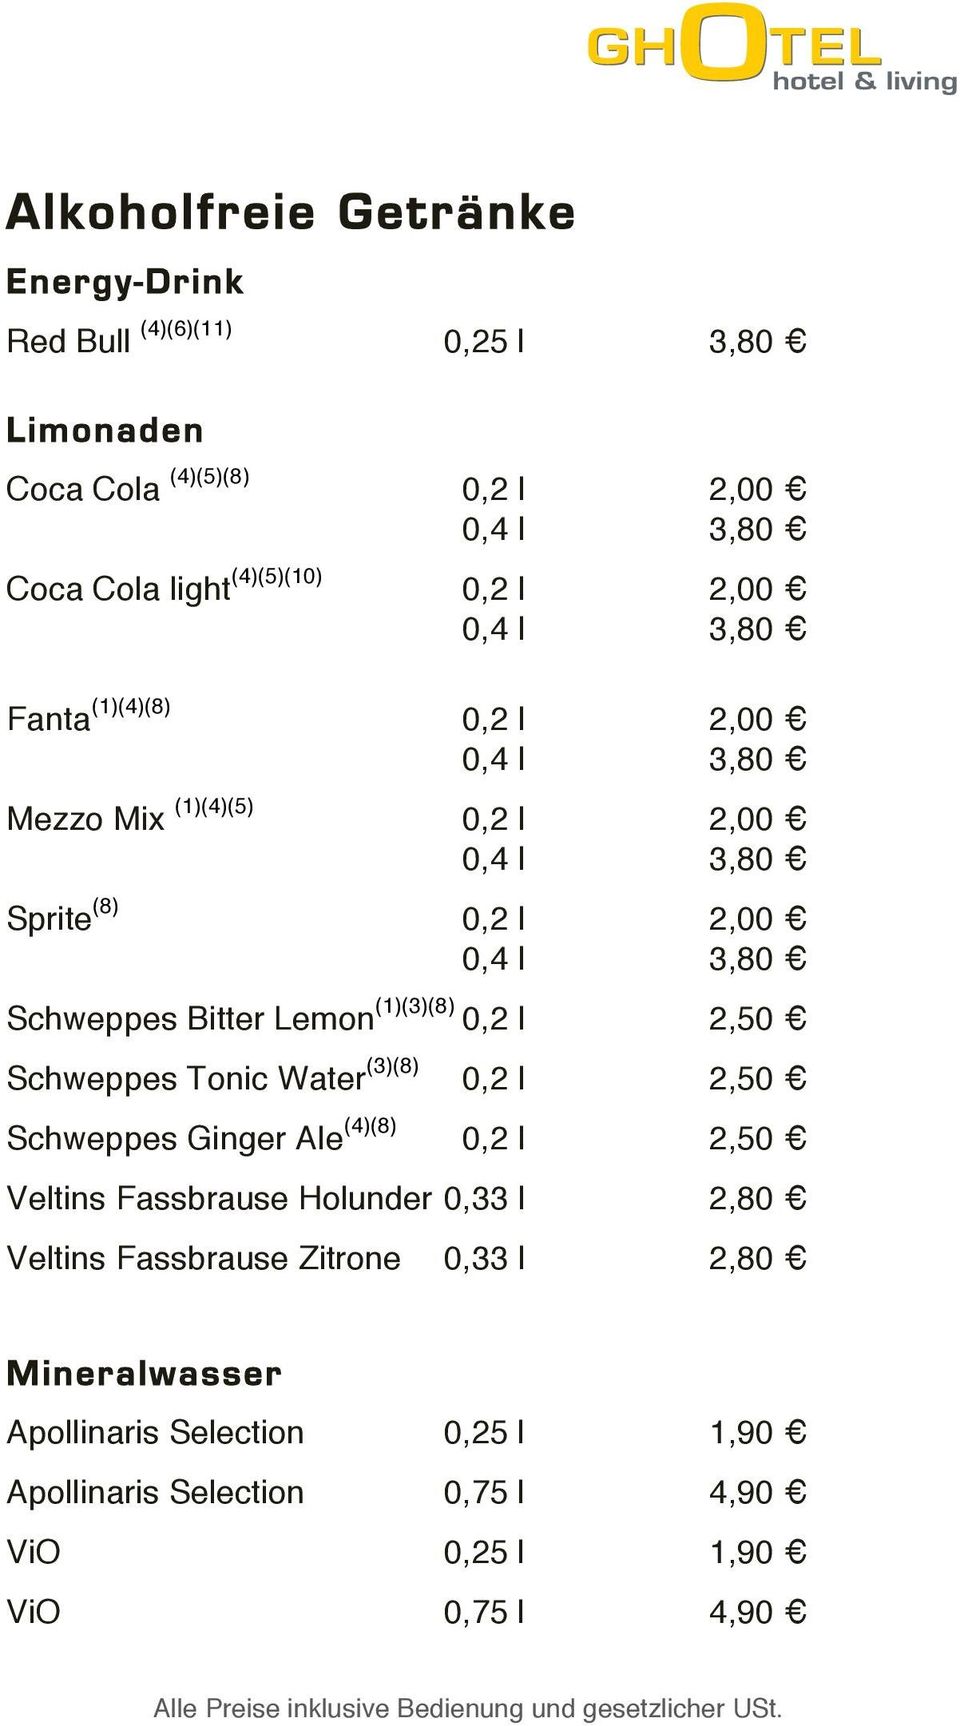 Bitter Lemon (1)(3)(8) 0,2 l 2,50 Schweppes Tonic Water (3)(8) 0,2 l 2,50 Schweppes Ginger Ale (4)(8) 0,2 l 2,50 Veltins Fassbrause Holunder 0,33 l